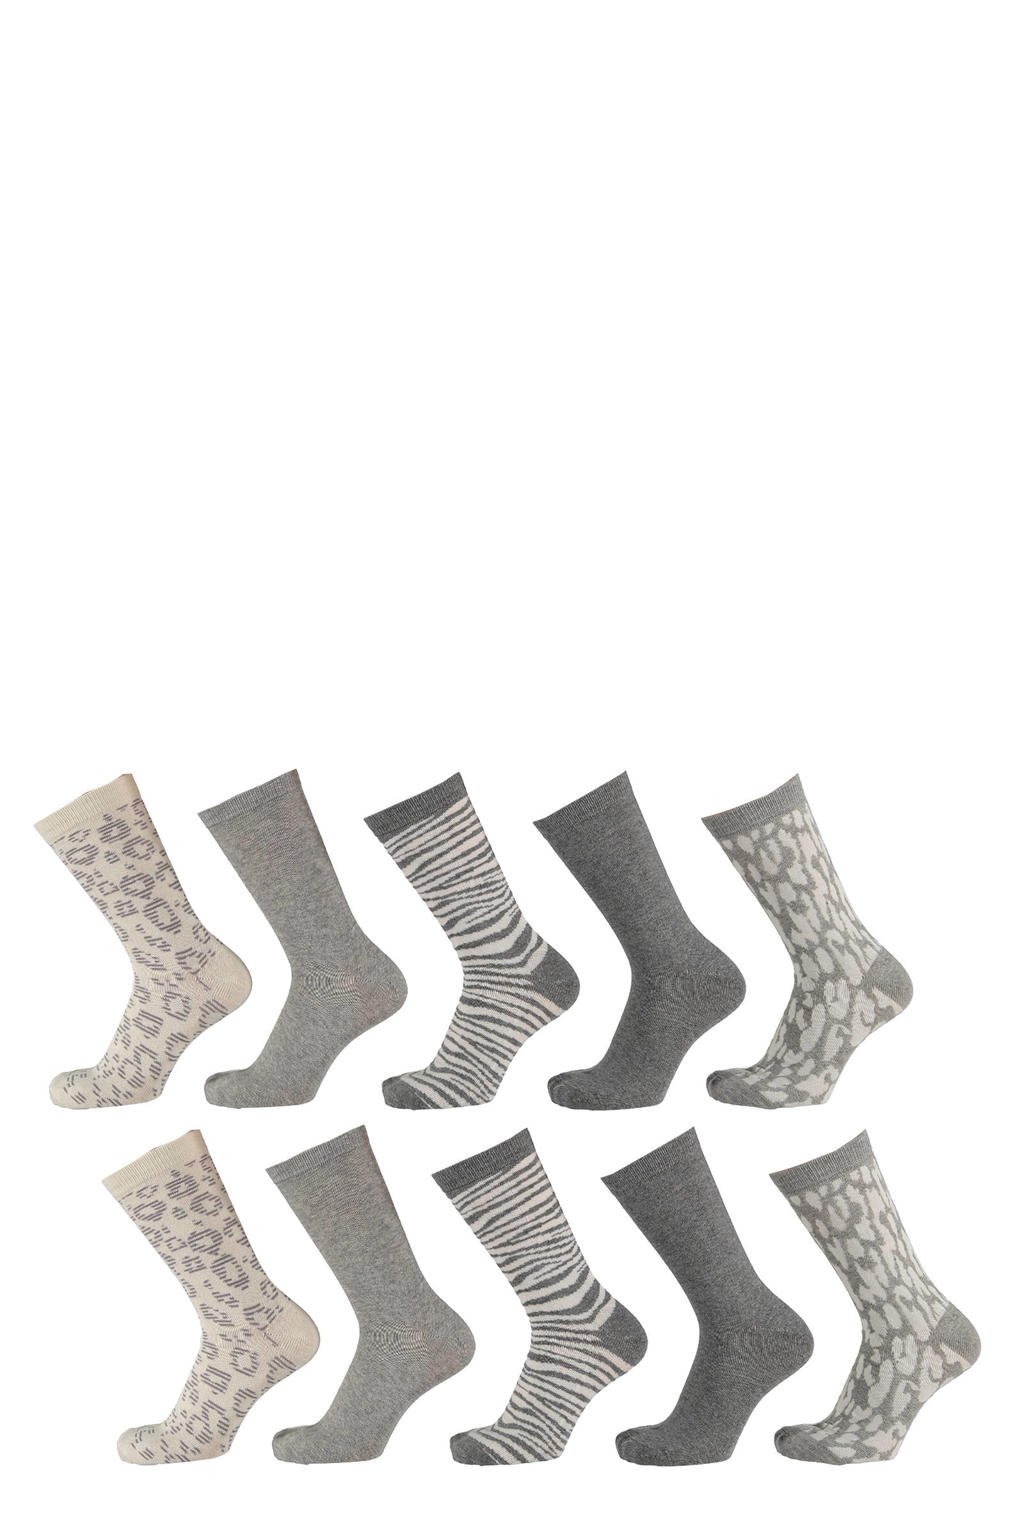 Apollo sokken met all-over print- set van 10 grijs